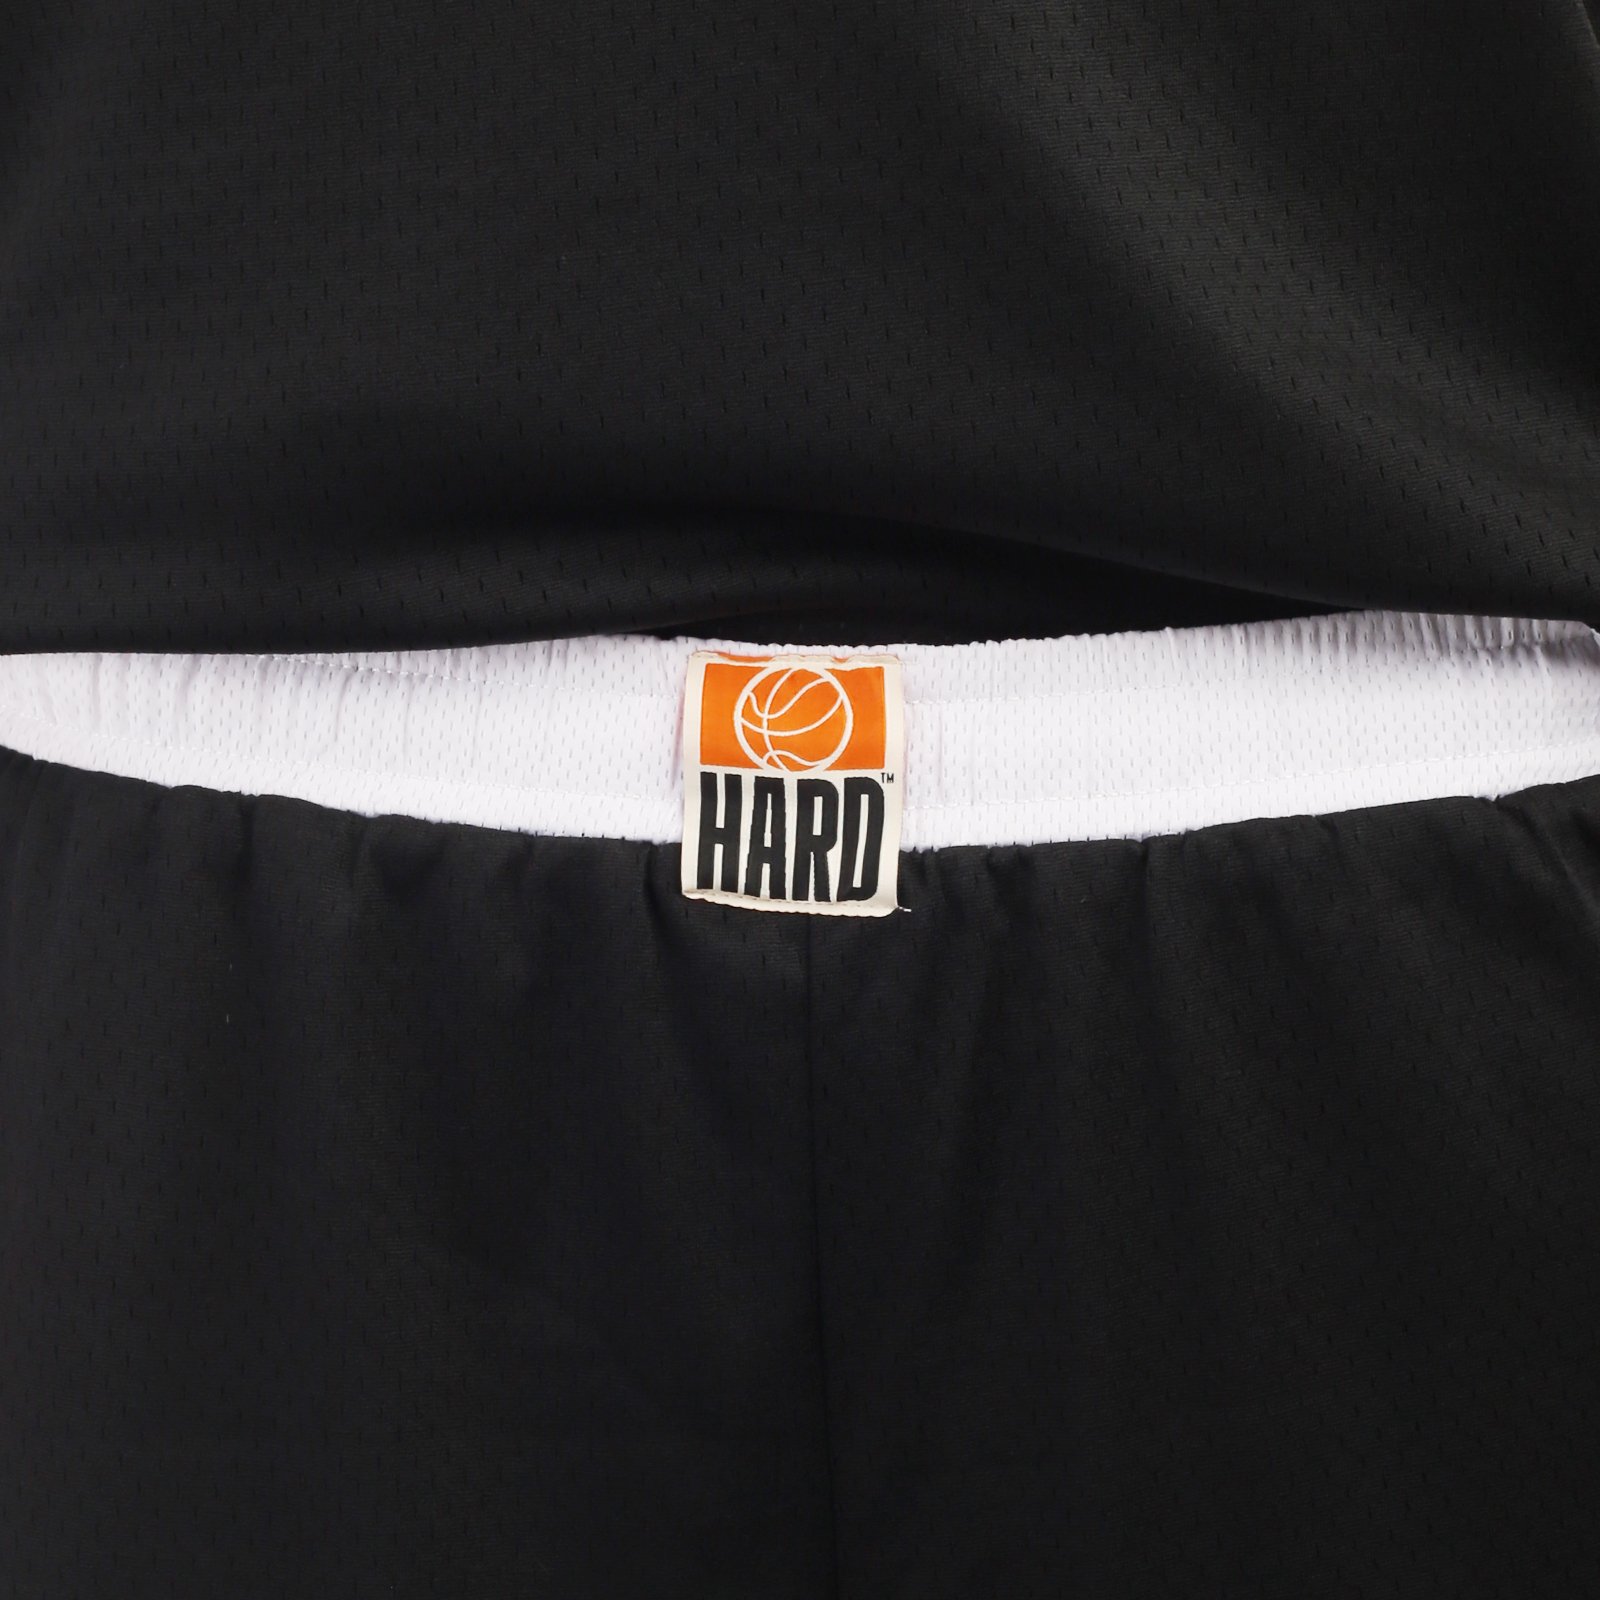 мужские черные шорты Hard Teammate Teammate short-blk/wht - цена, описание, фото 5